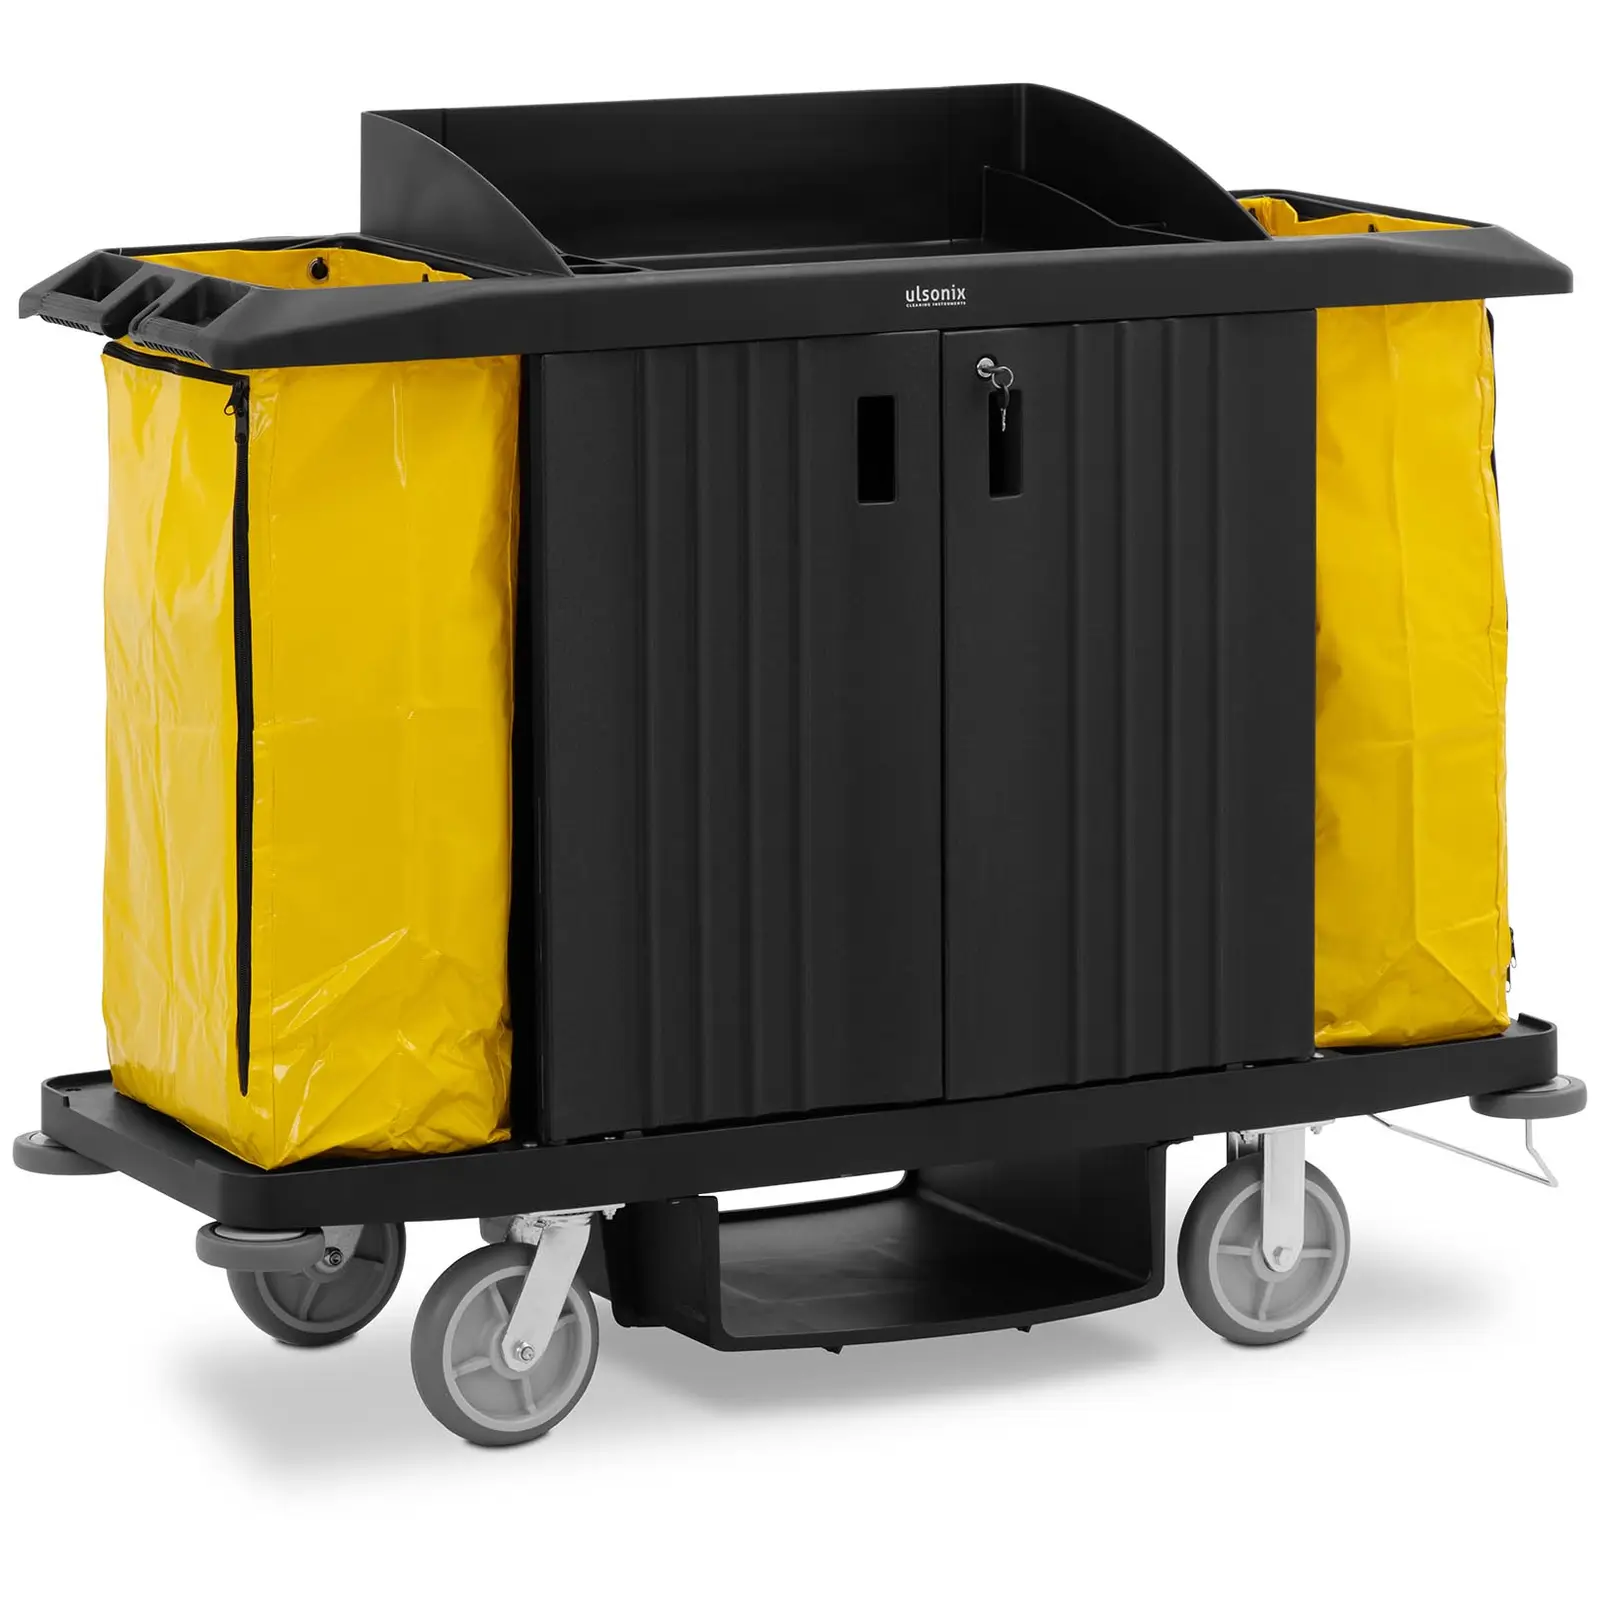 Reinigungswagen - abschließbar - 250 kg - 6 Ablagen - 2 Säcke aus Nylon